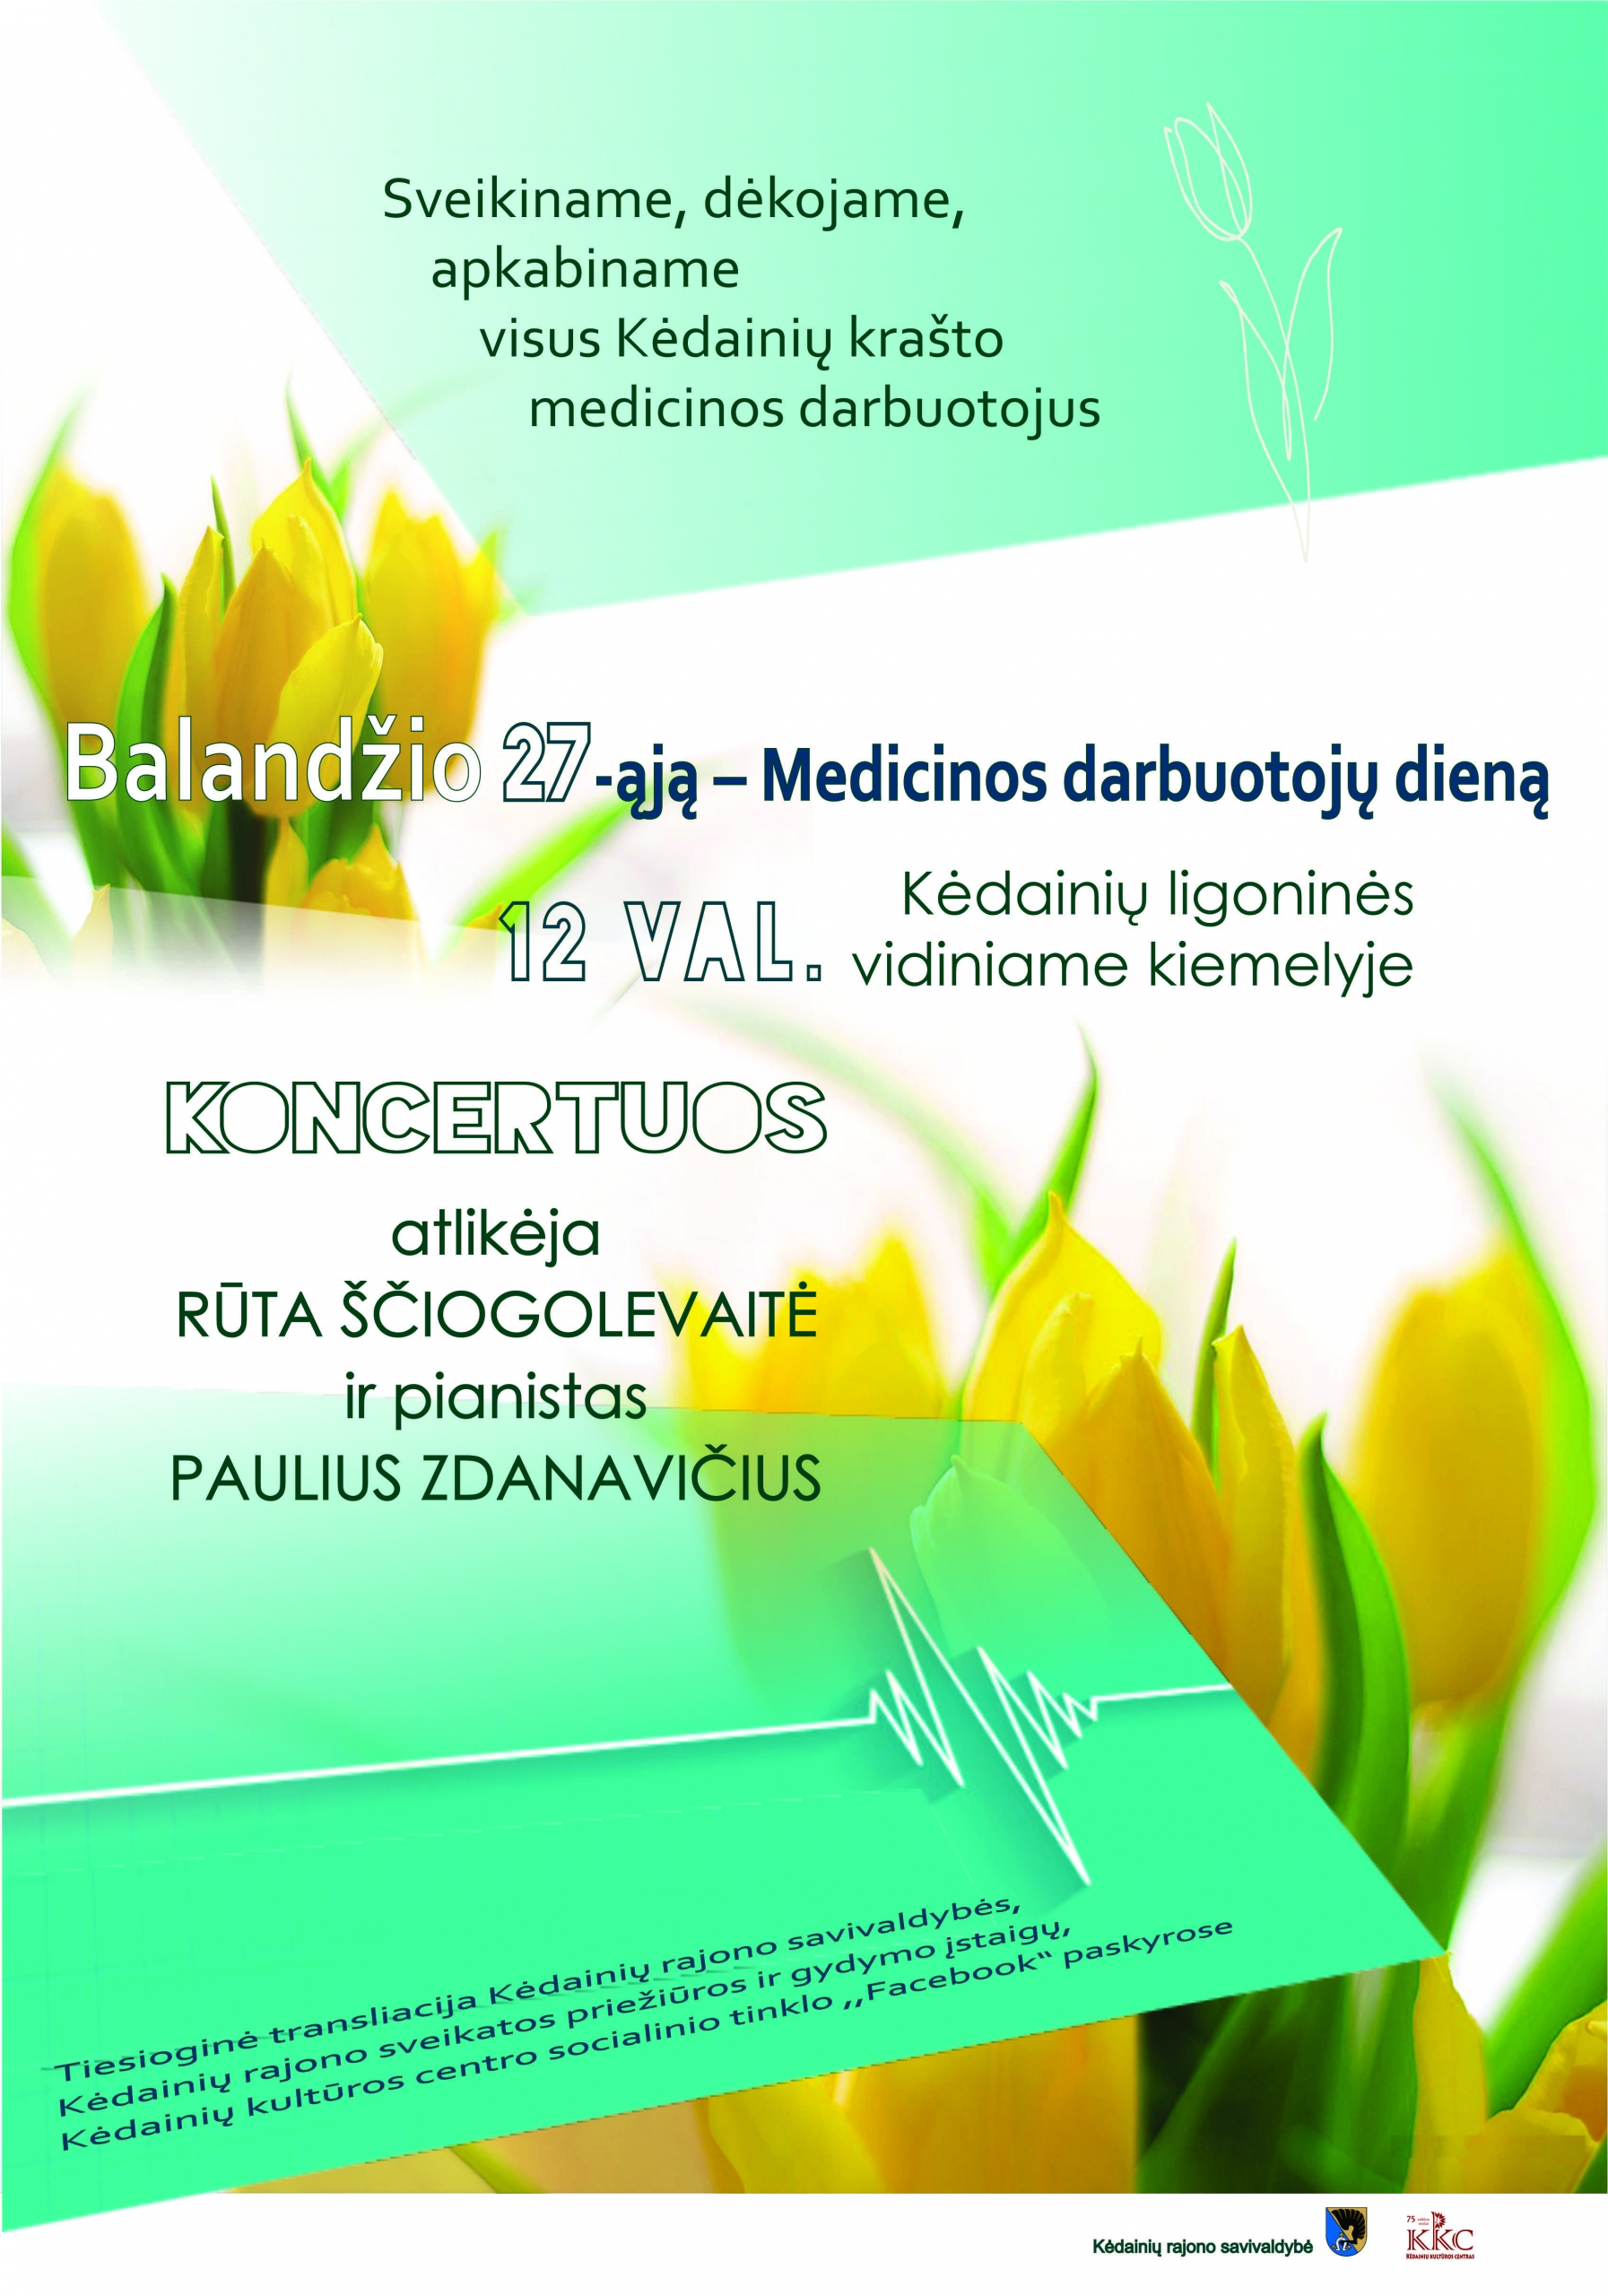 Balandžio 27 – ąją – Medicinos darbuotoju diena!